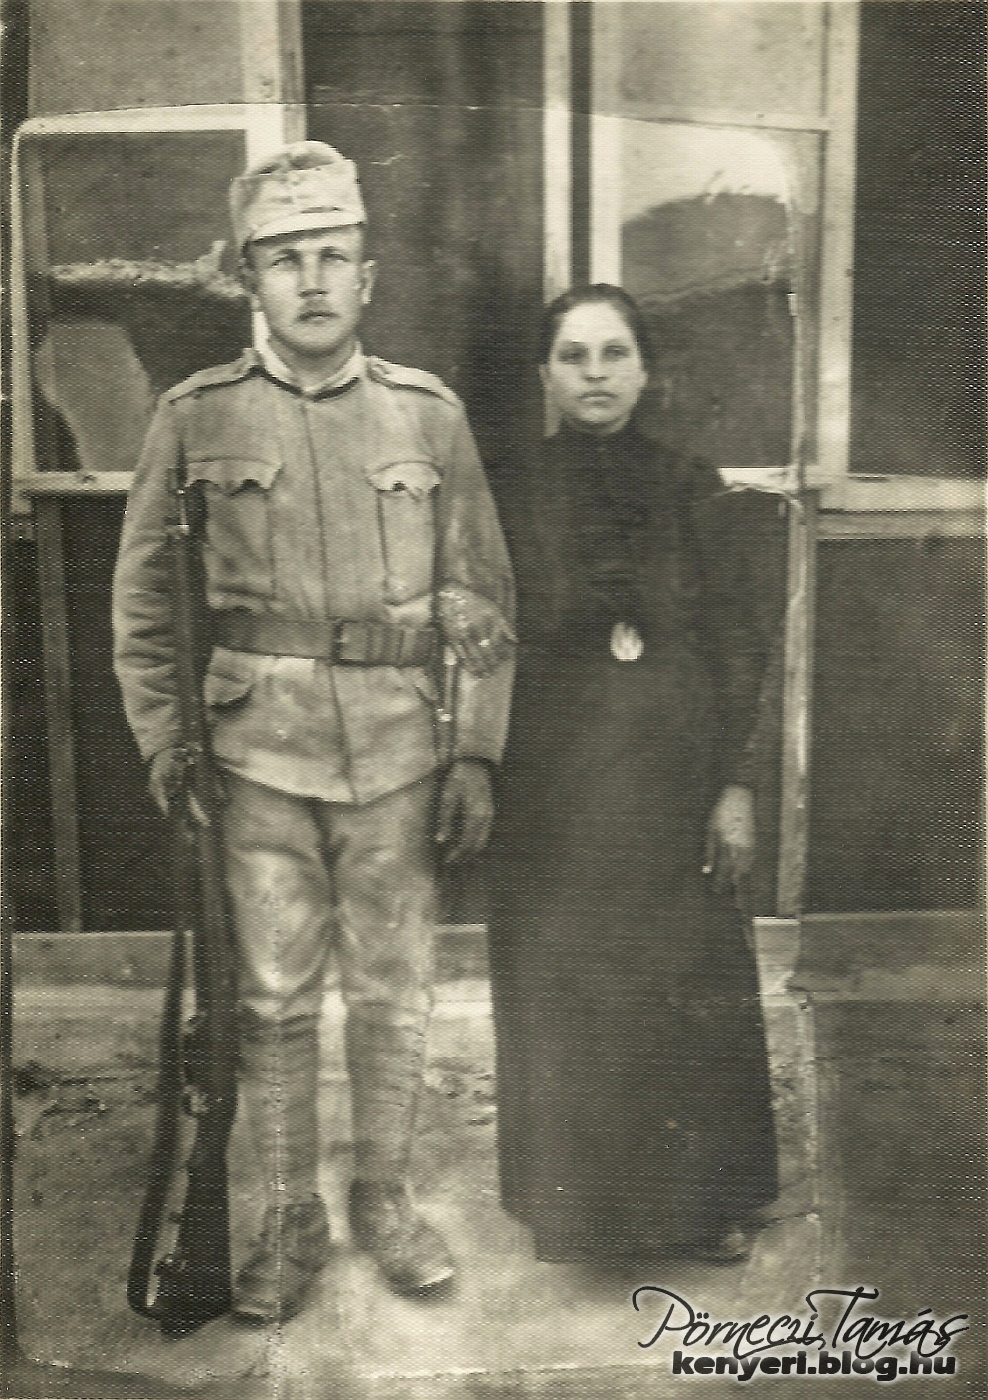 Őri dédapám katonai szolgálata alatt találkozhatott családjával. Ezt a háború során úgy oldották meg, hogy a család utazott el a férj szolgálati helyéhez közeli városba. A fotón feleségével fotózták le, 1915-ben,  Pozsonyban. (Családi fotóalbumomból)